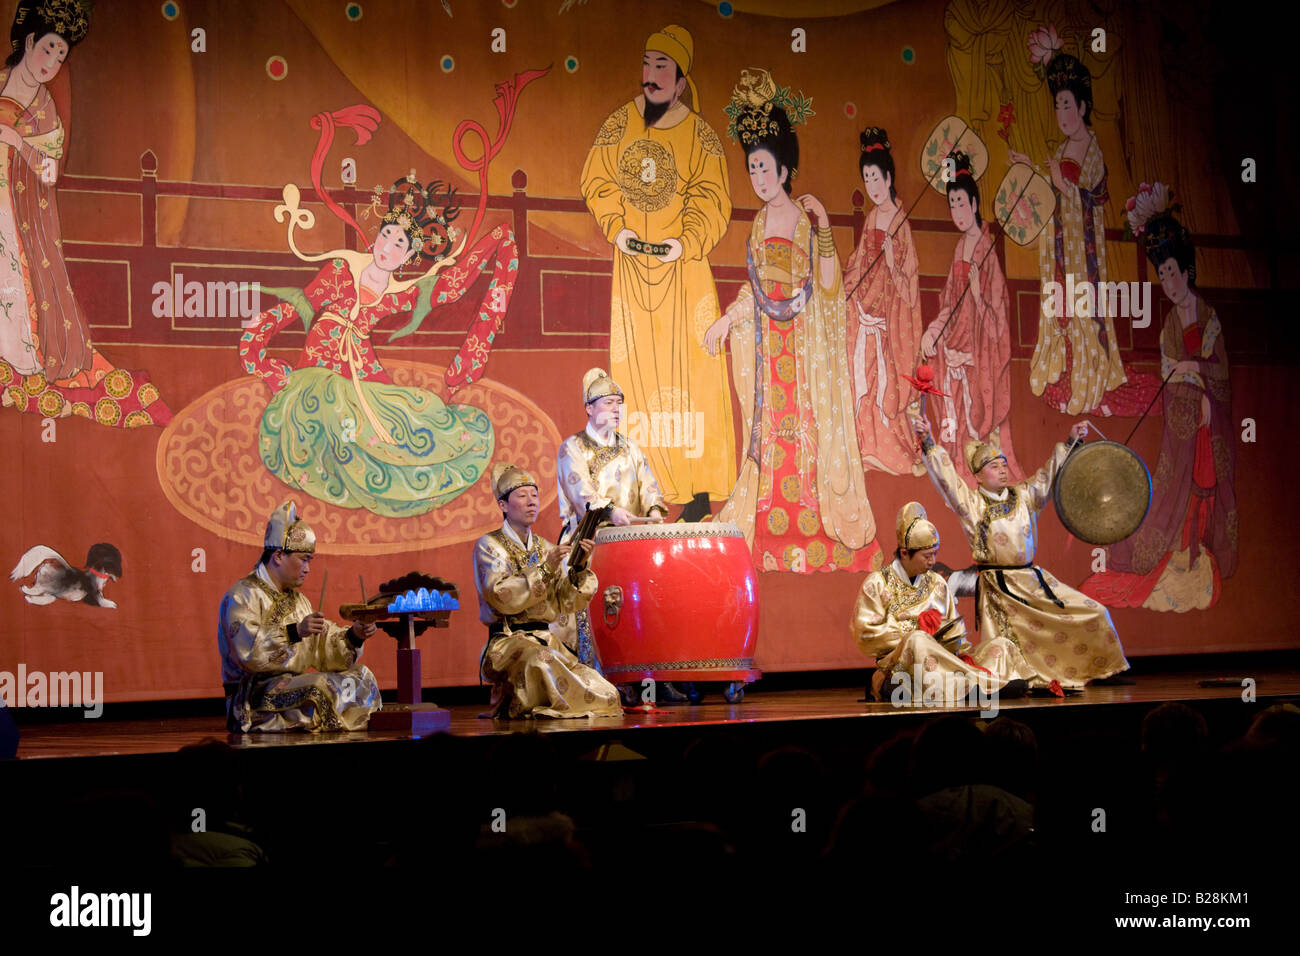 Músicos en el espectáculo de danza Tang Grand Opera House de Shaanxi Xian, China Foto de stock